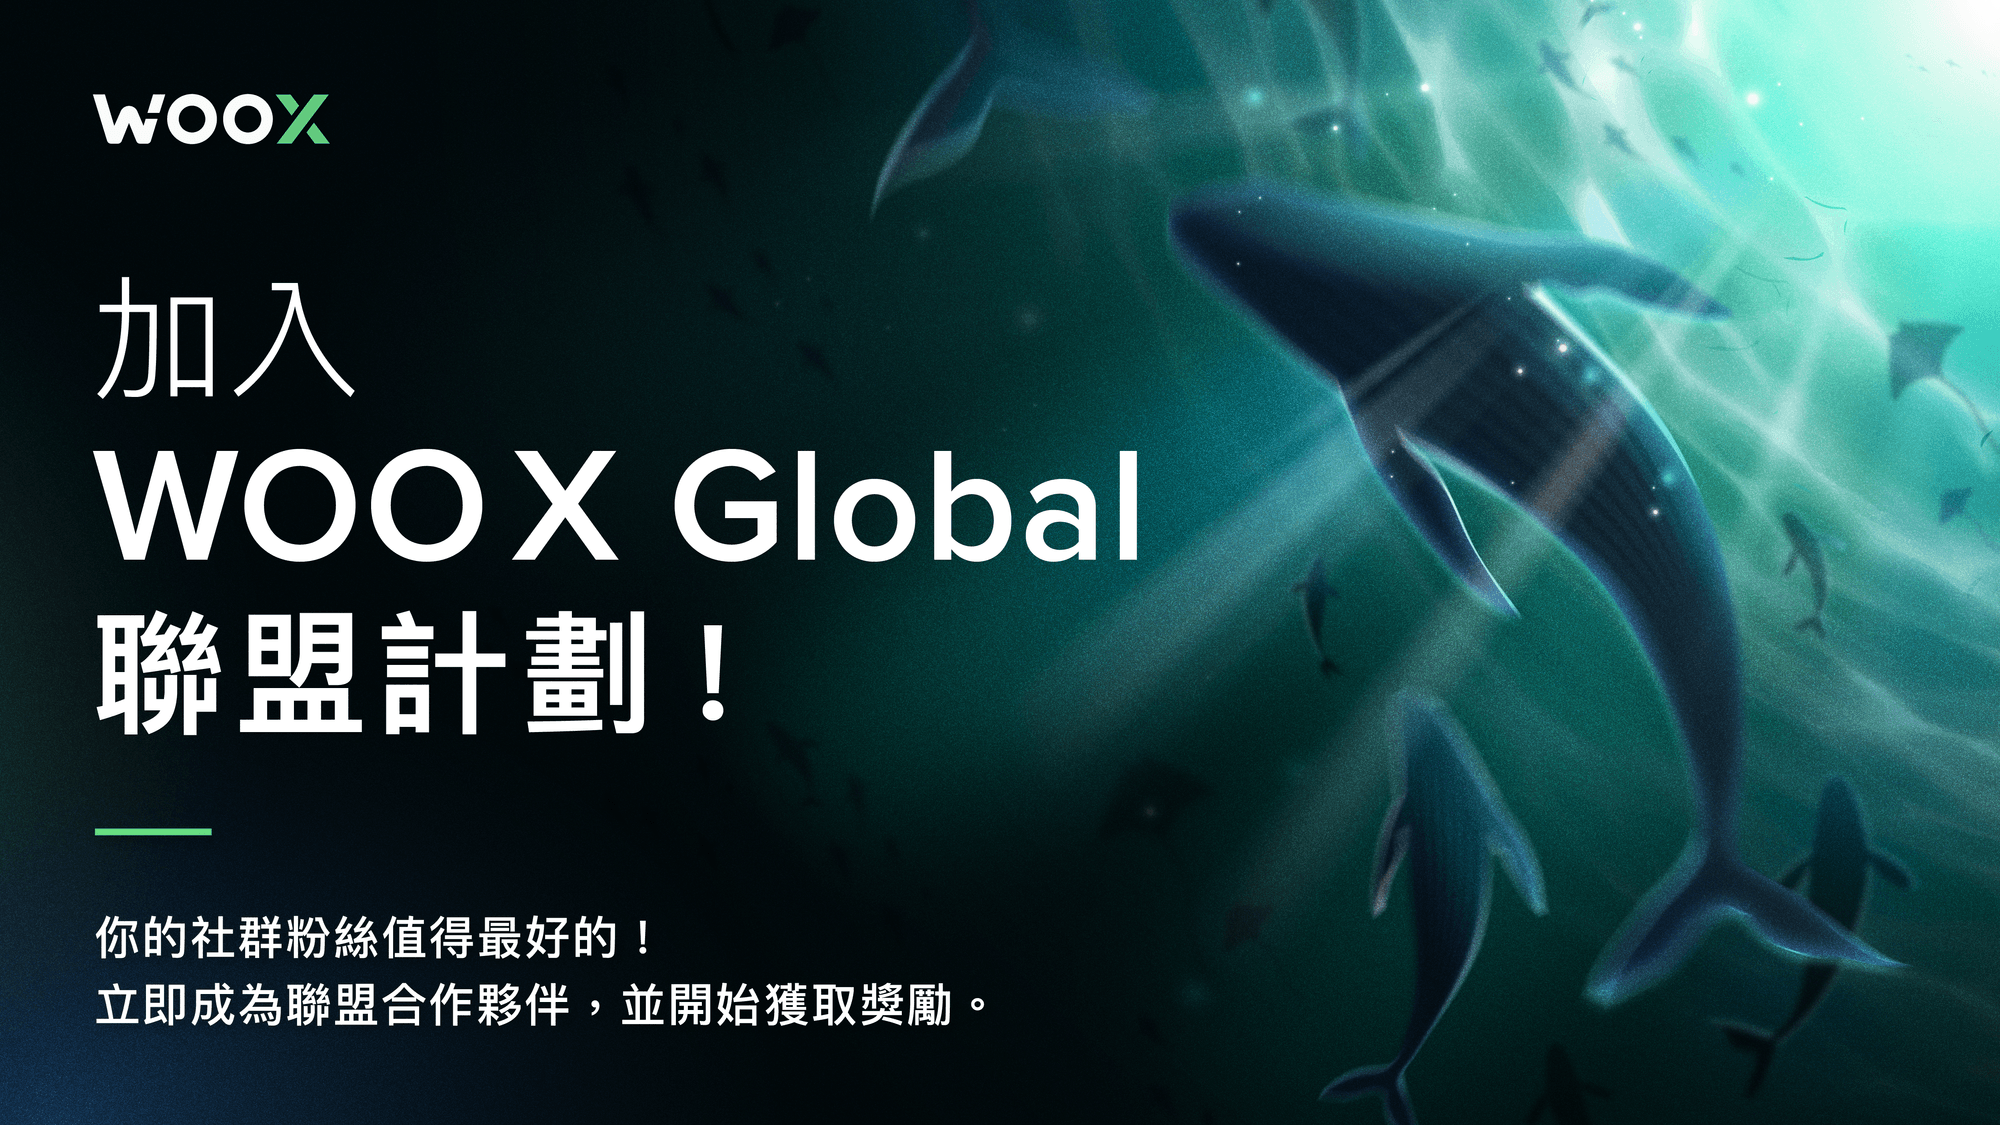 加入 WOO X Global 聯盟計劃！